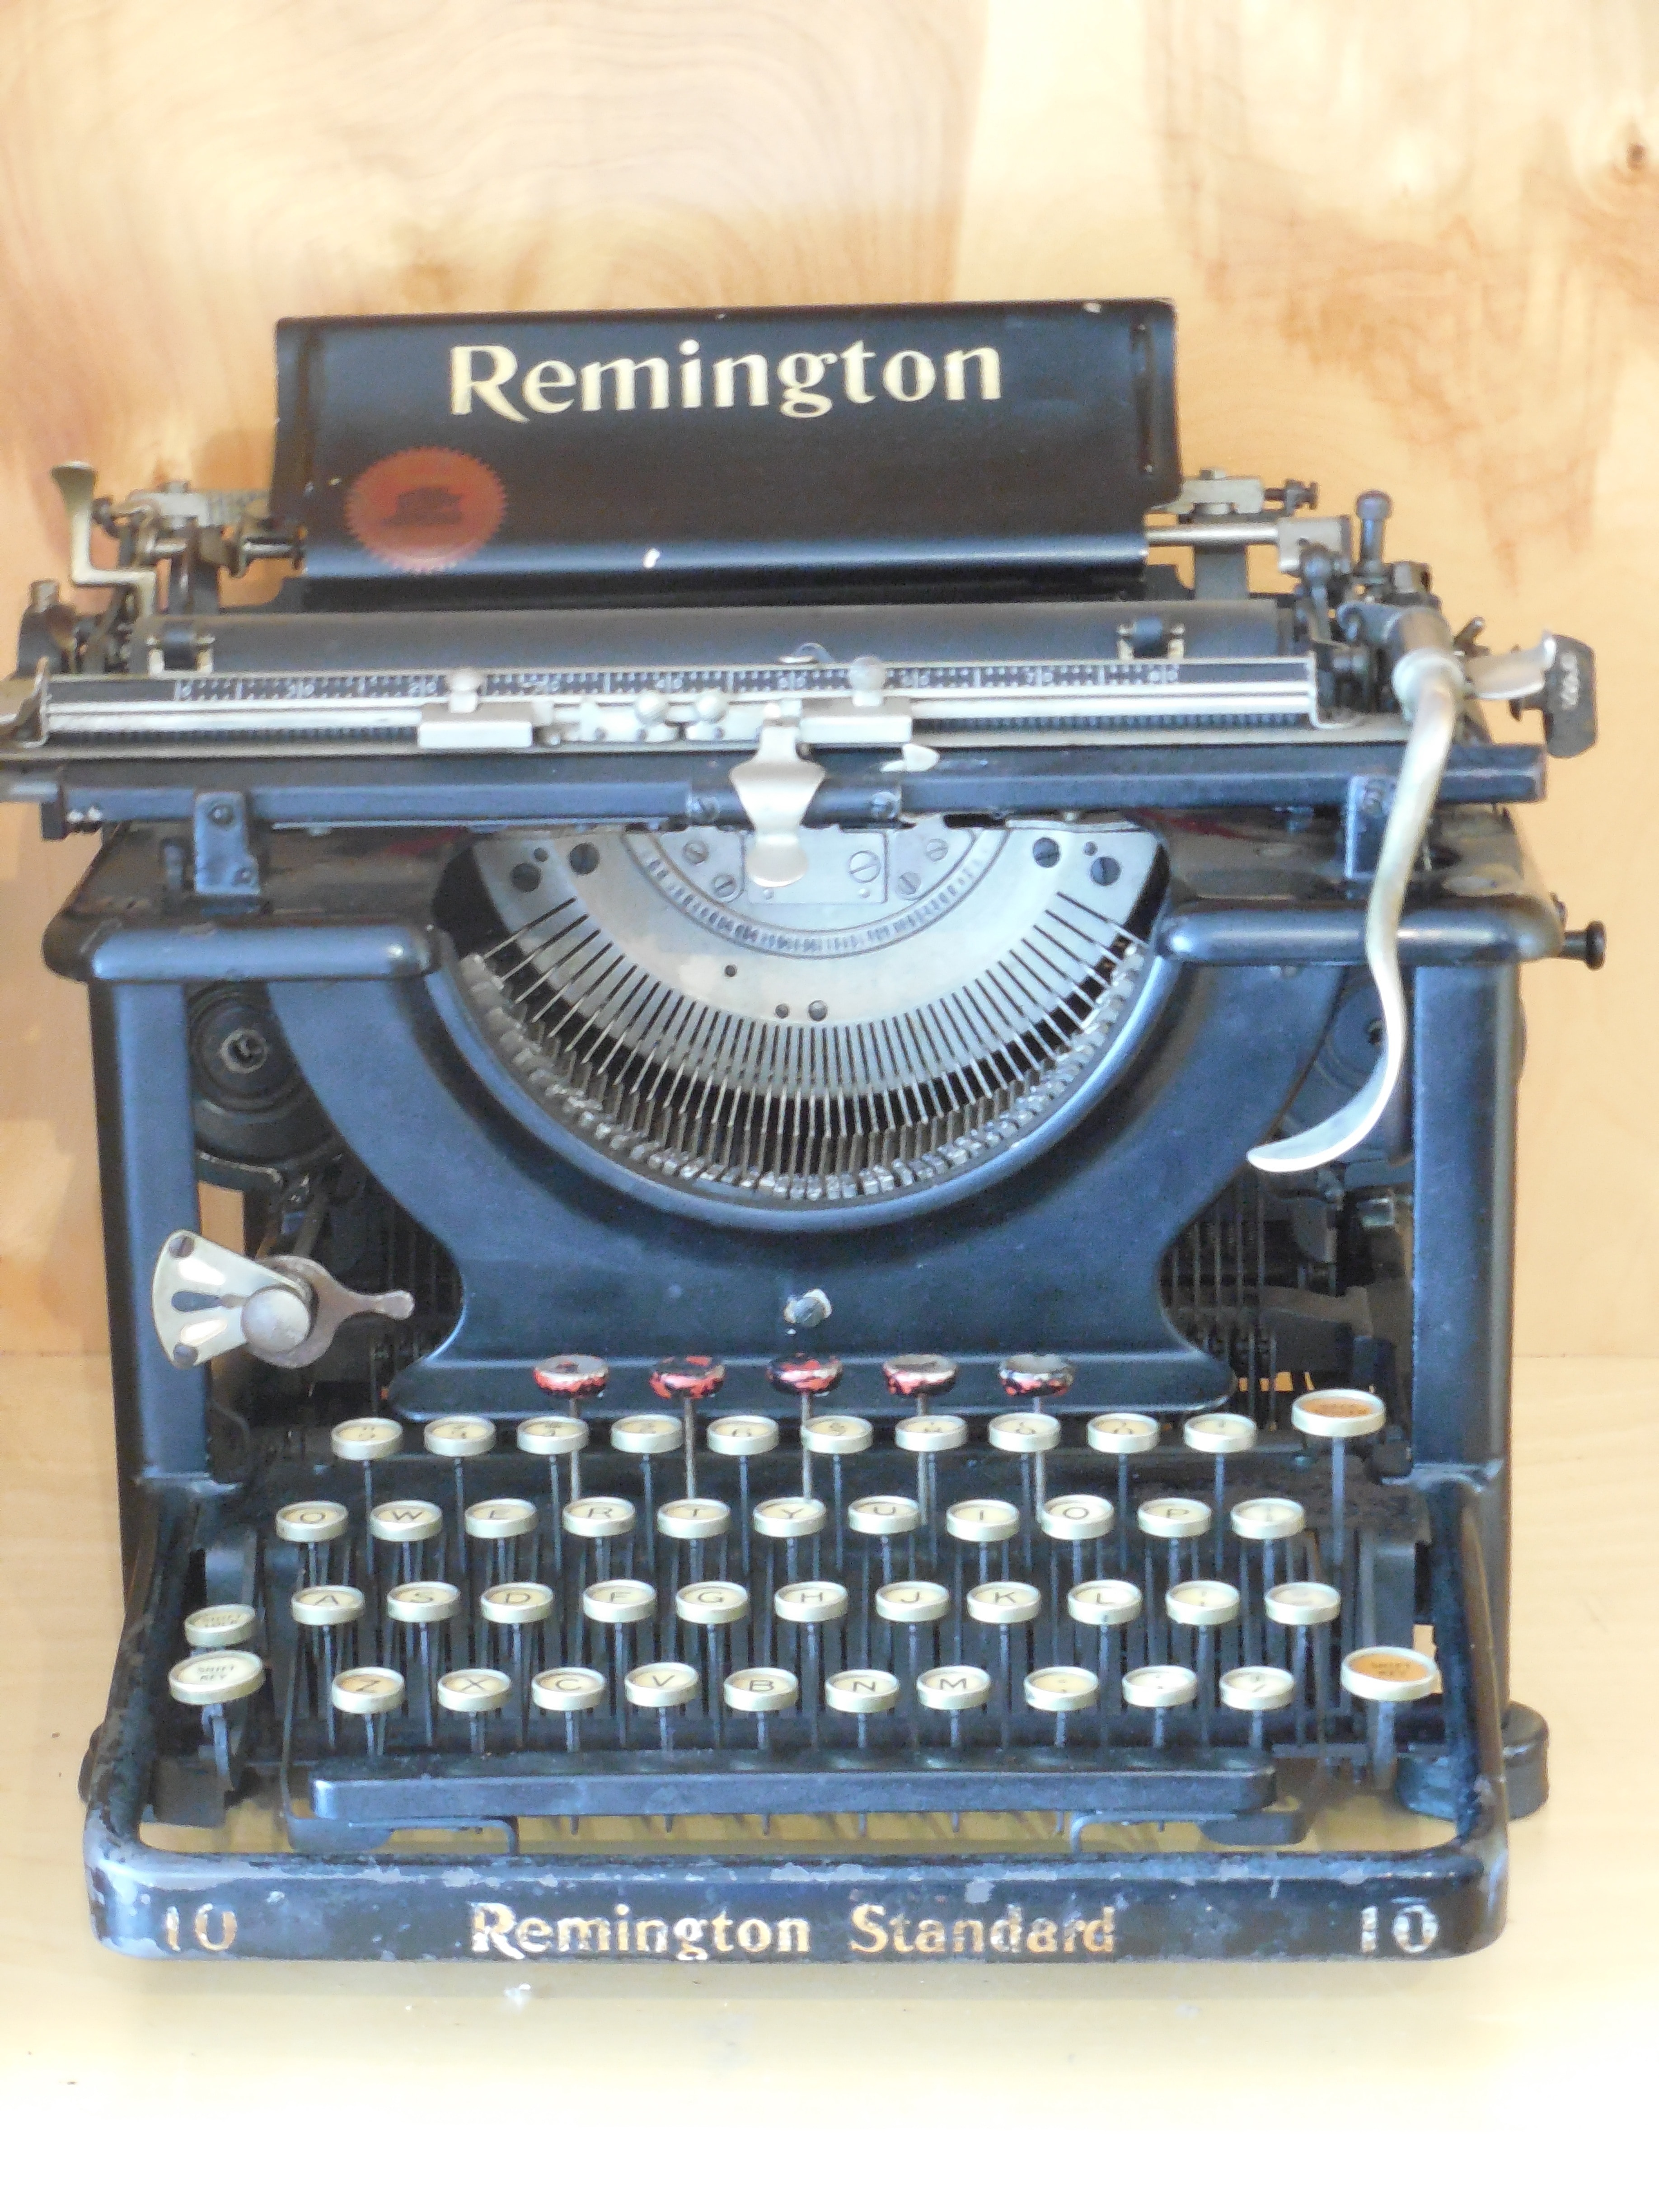 black and gray remington standard typewriter